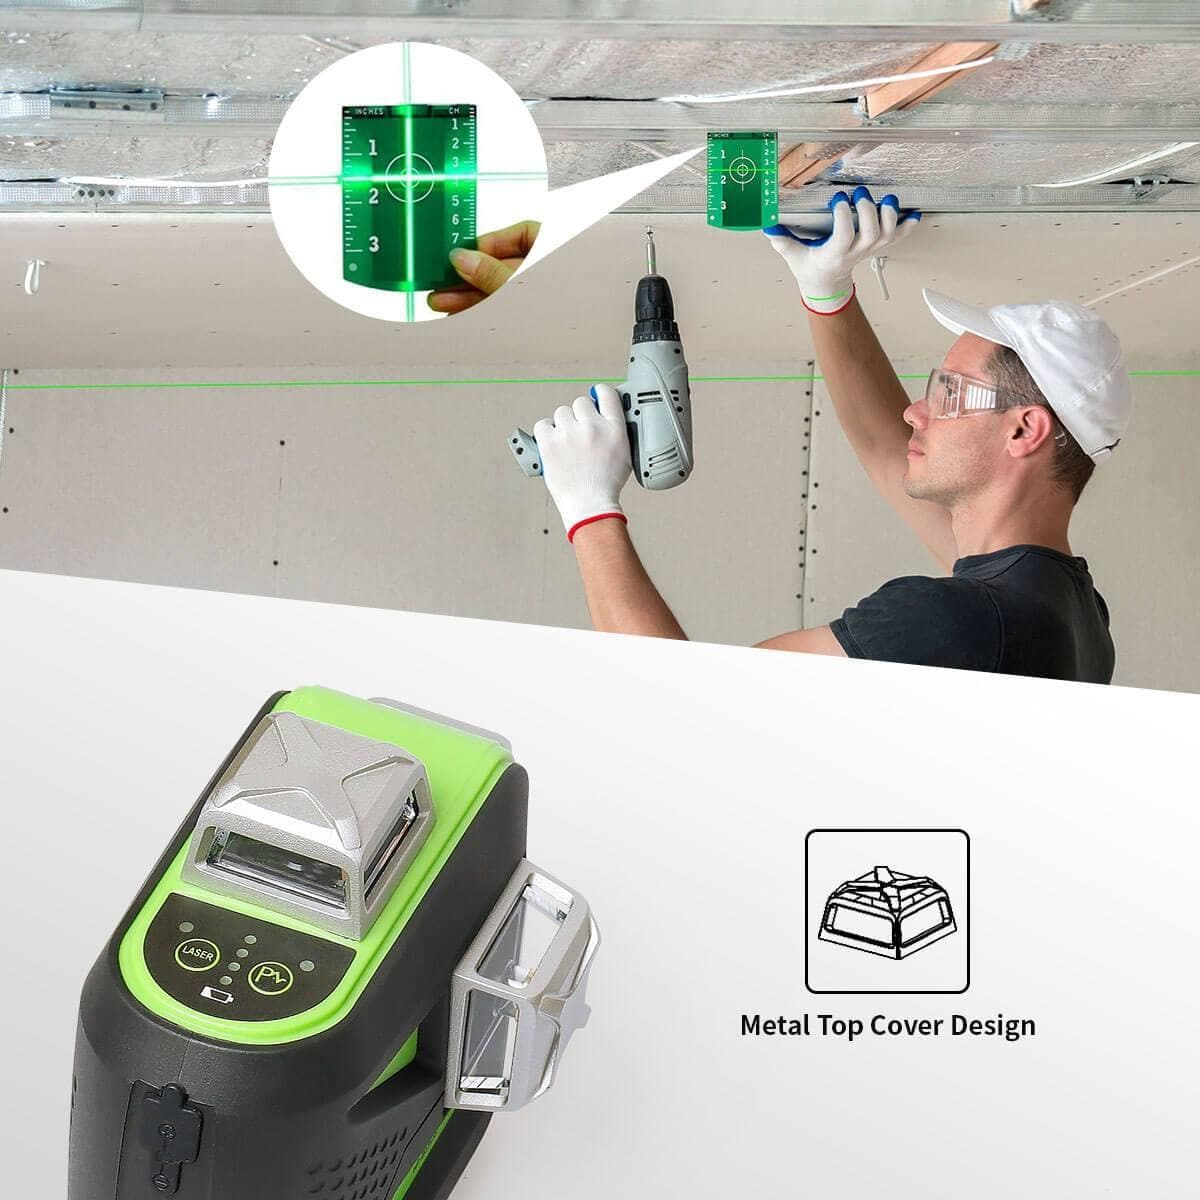 Huepar 603BT-H - 3D Green Beam Self-Leveling 3 X 360° Laser Level with Hardcase - HUEPAR US